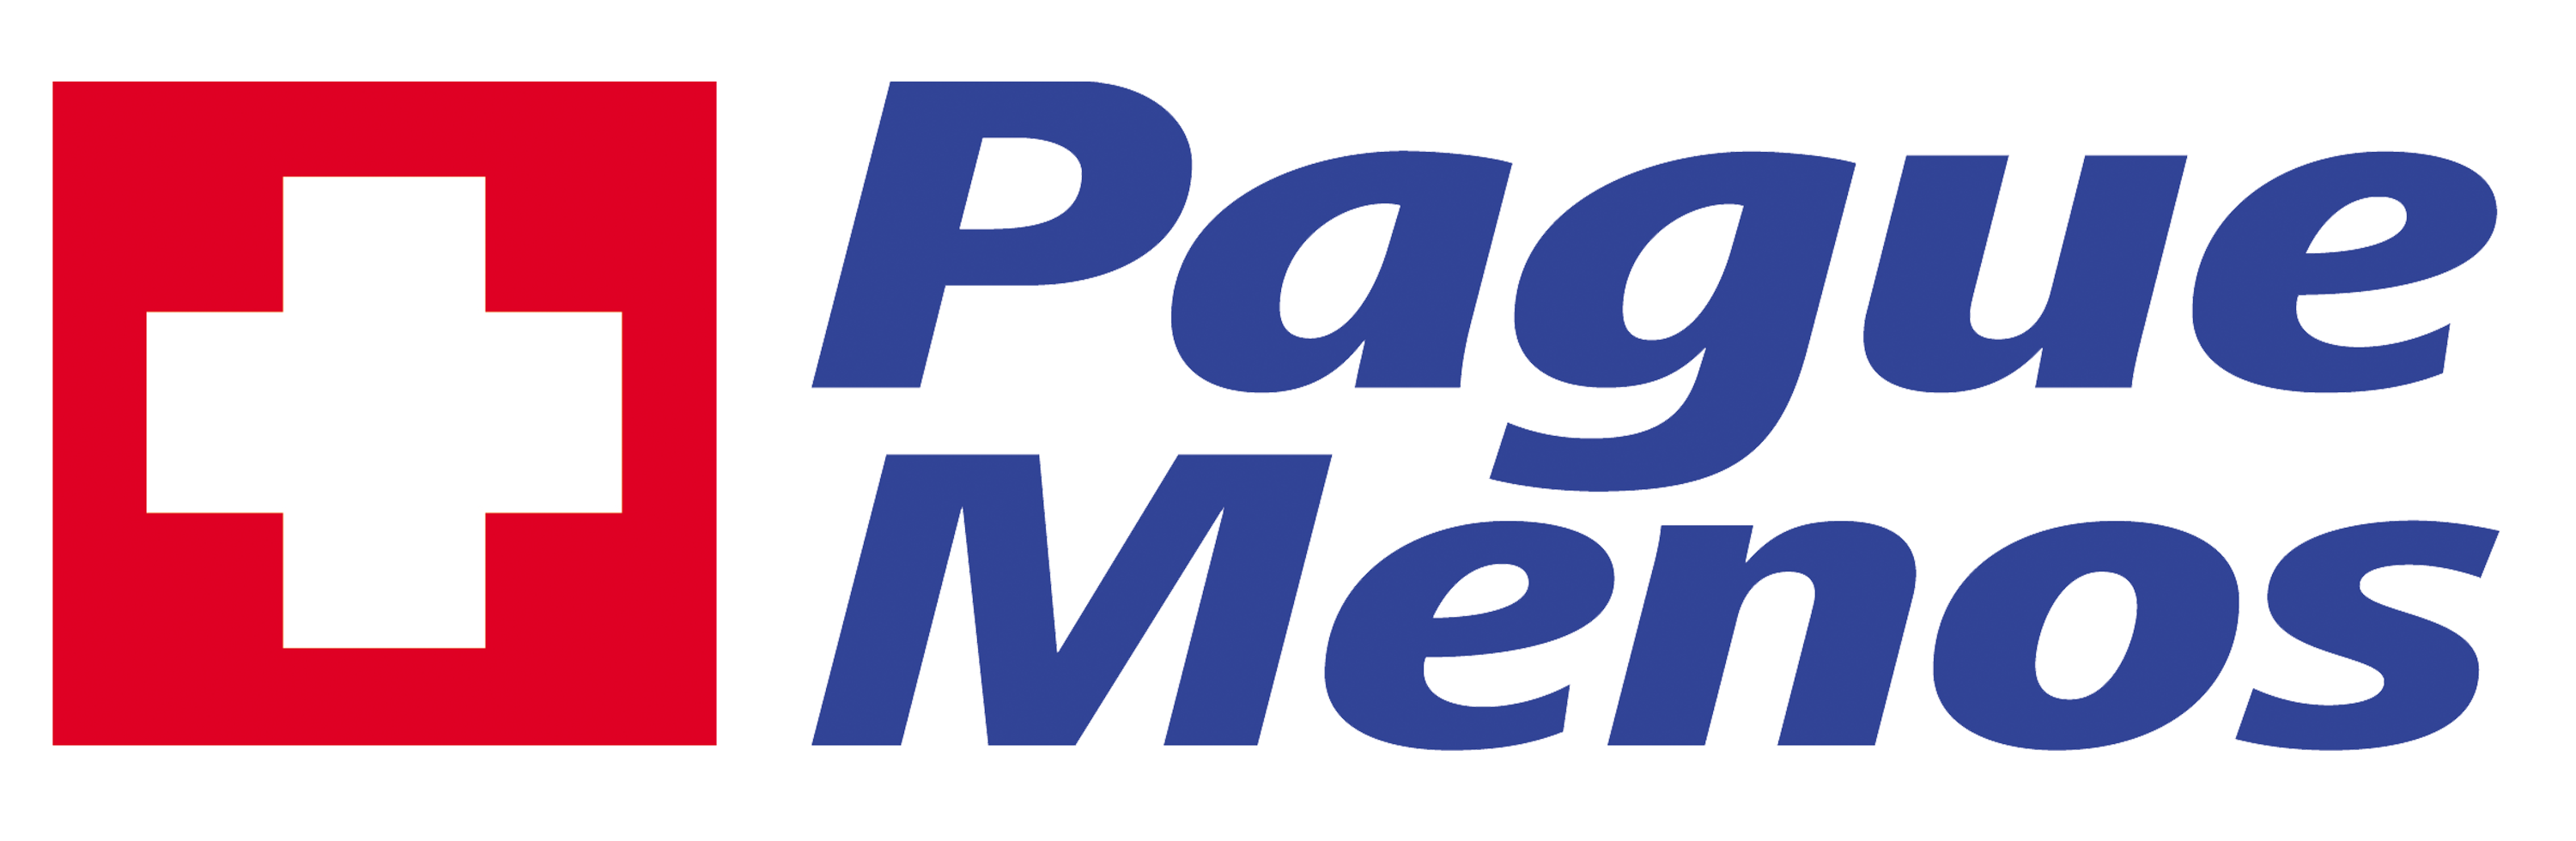 Farmacia Pague Menos - Bandeirante - MS